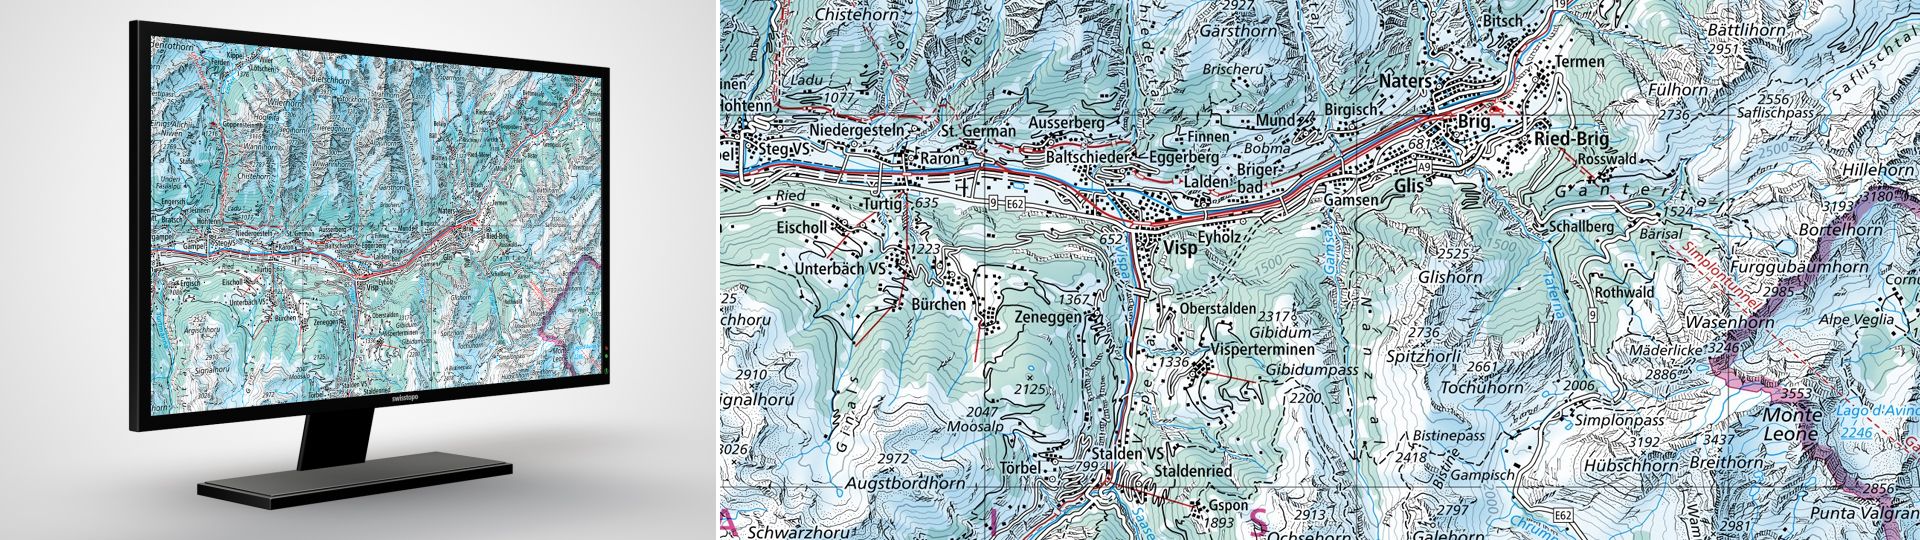 Swiss Map Raster Winter 200: Swiss Map Raster Winter 200 ist die digitale Landeskarte 1:200 000 in winterlicher Darstellung im Rasterformat.